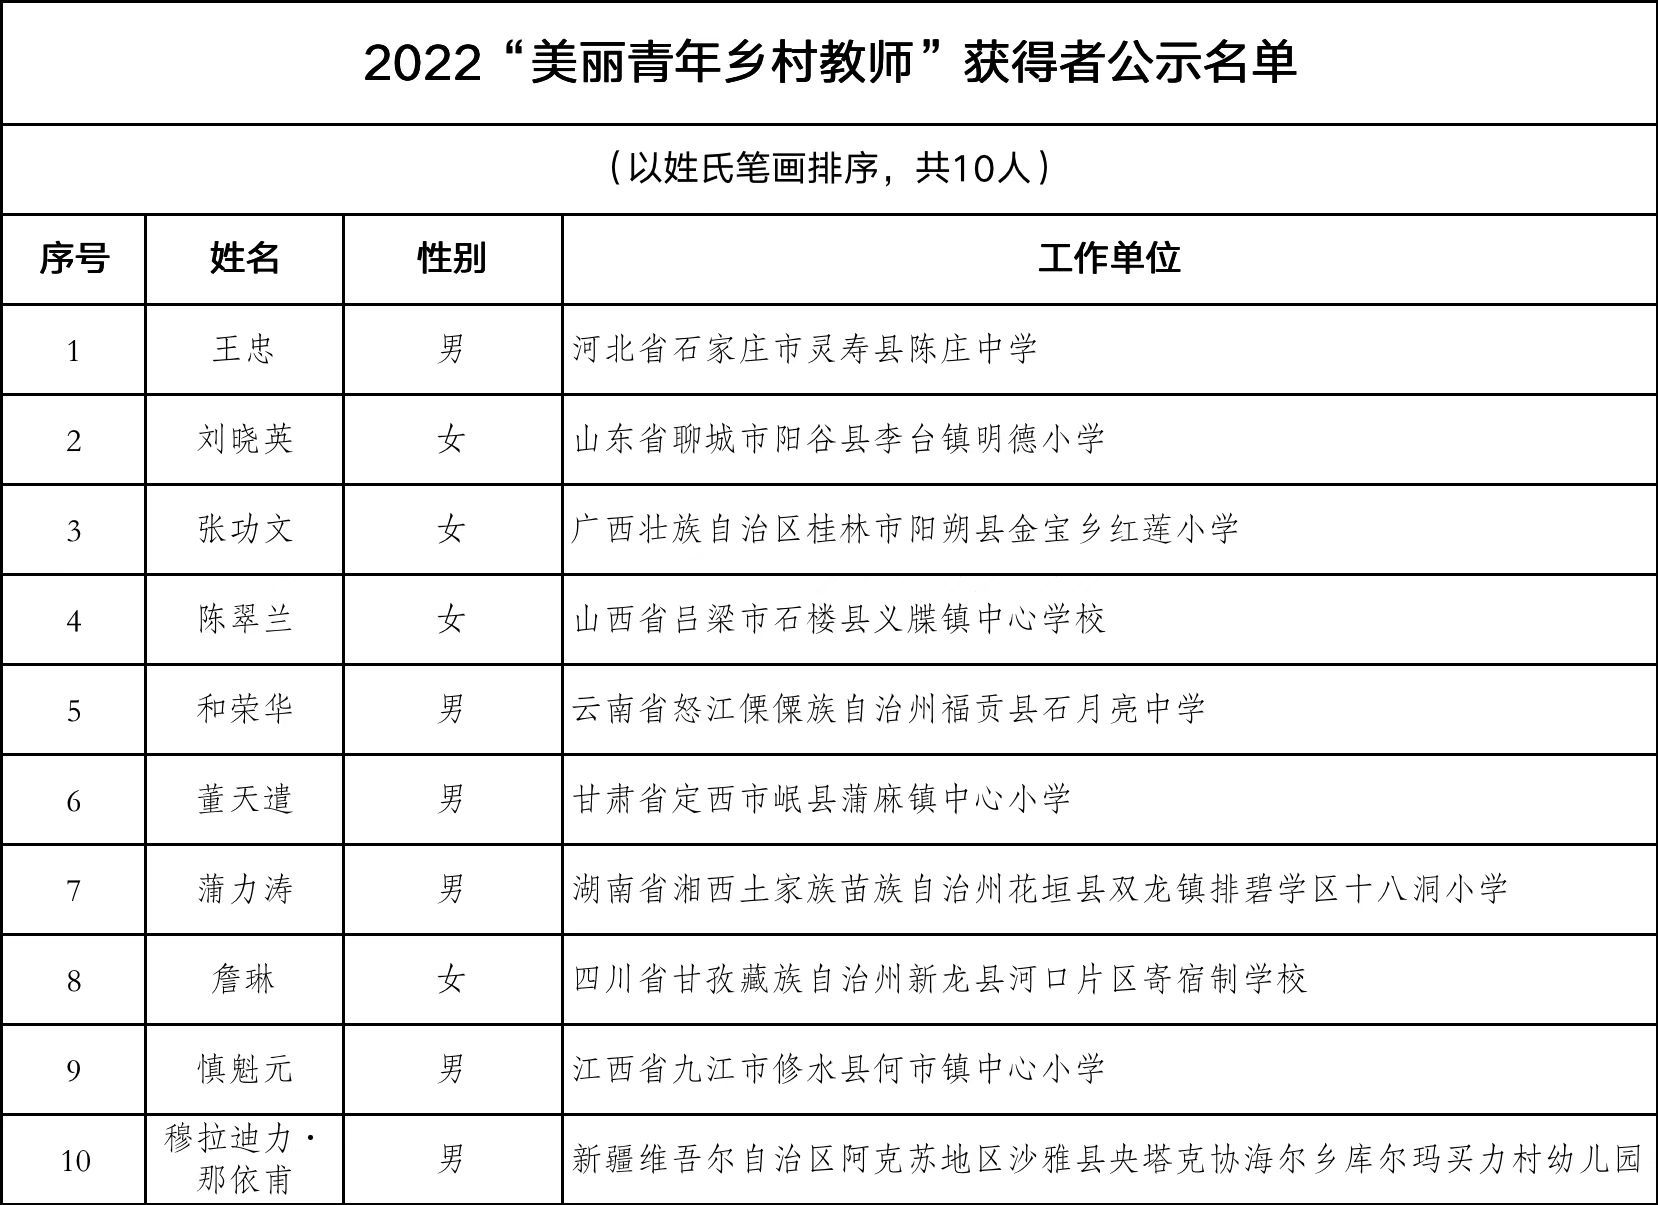 2022“美麗青年鄉村教師”尋訪活動名單公示